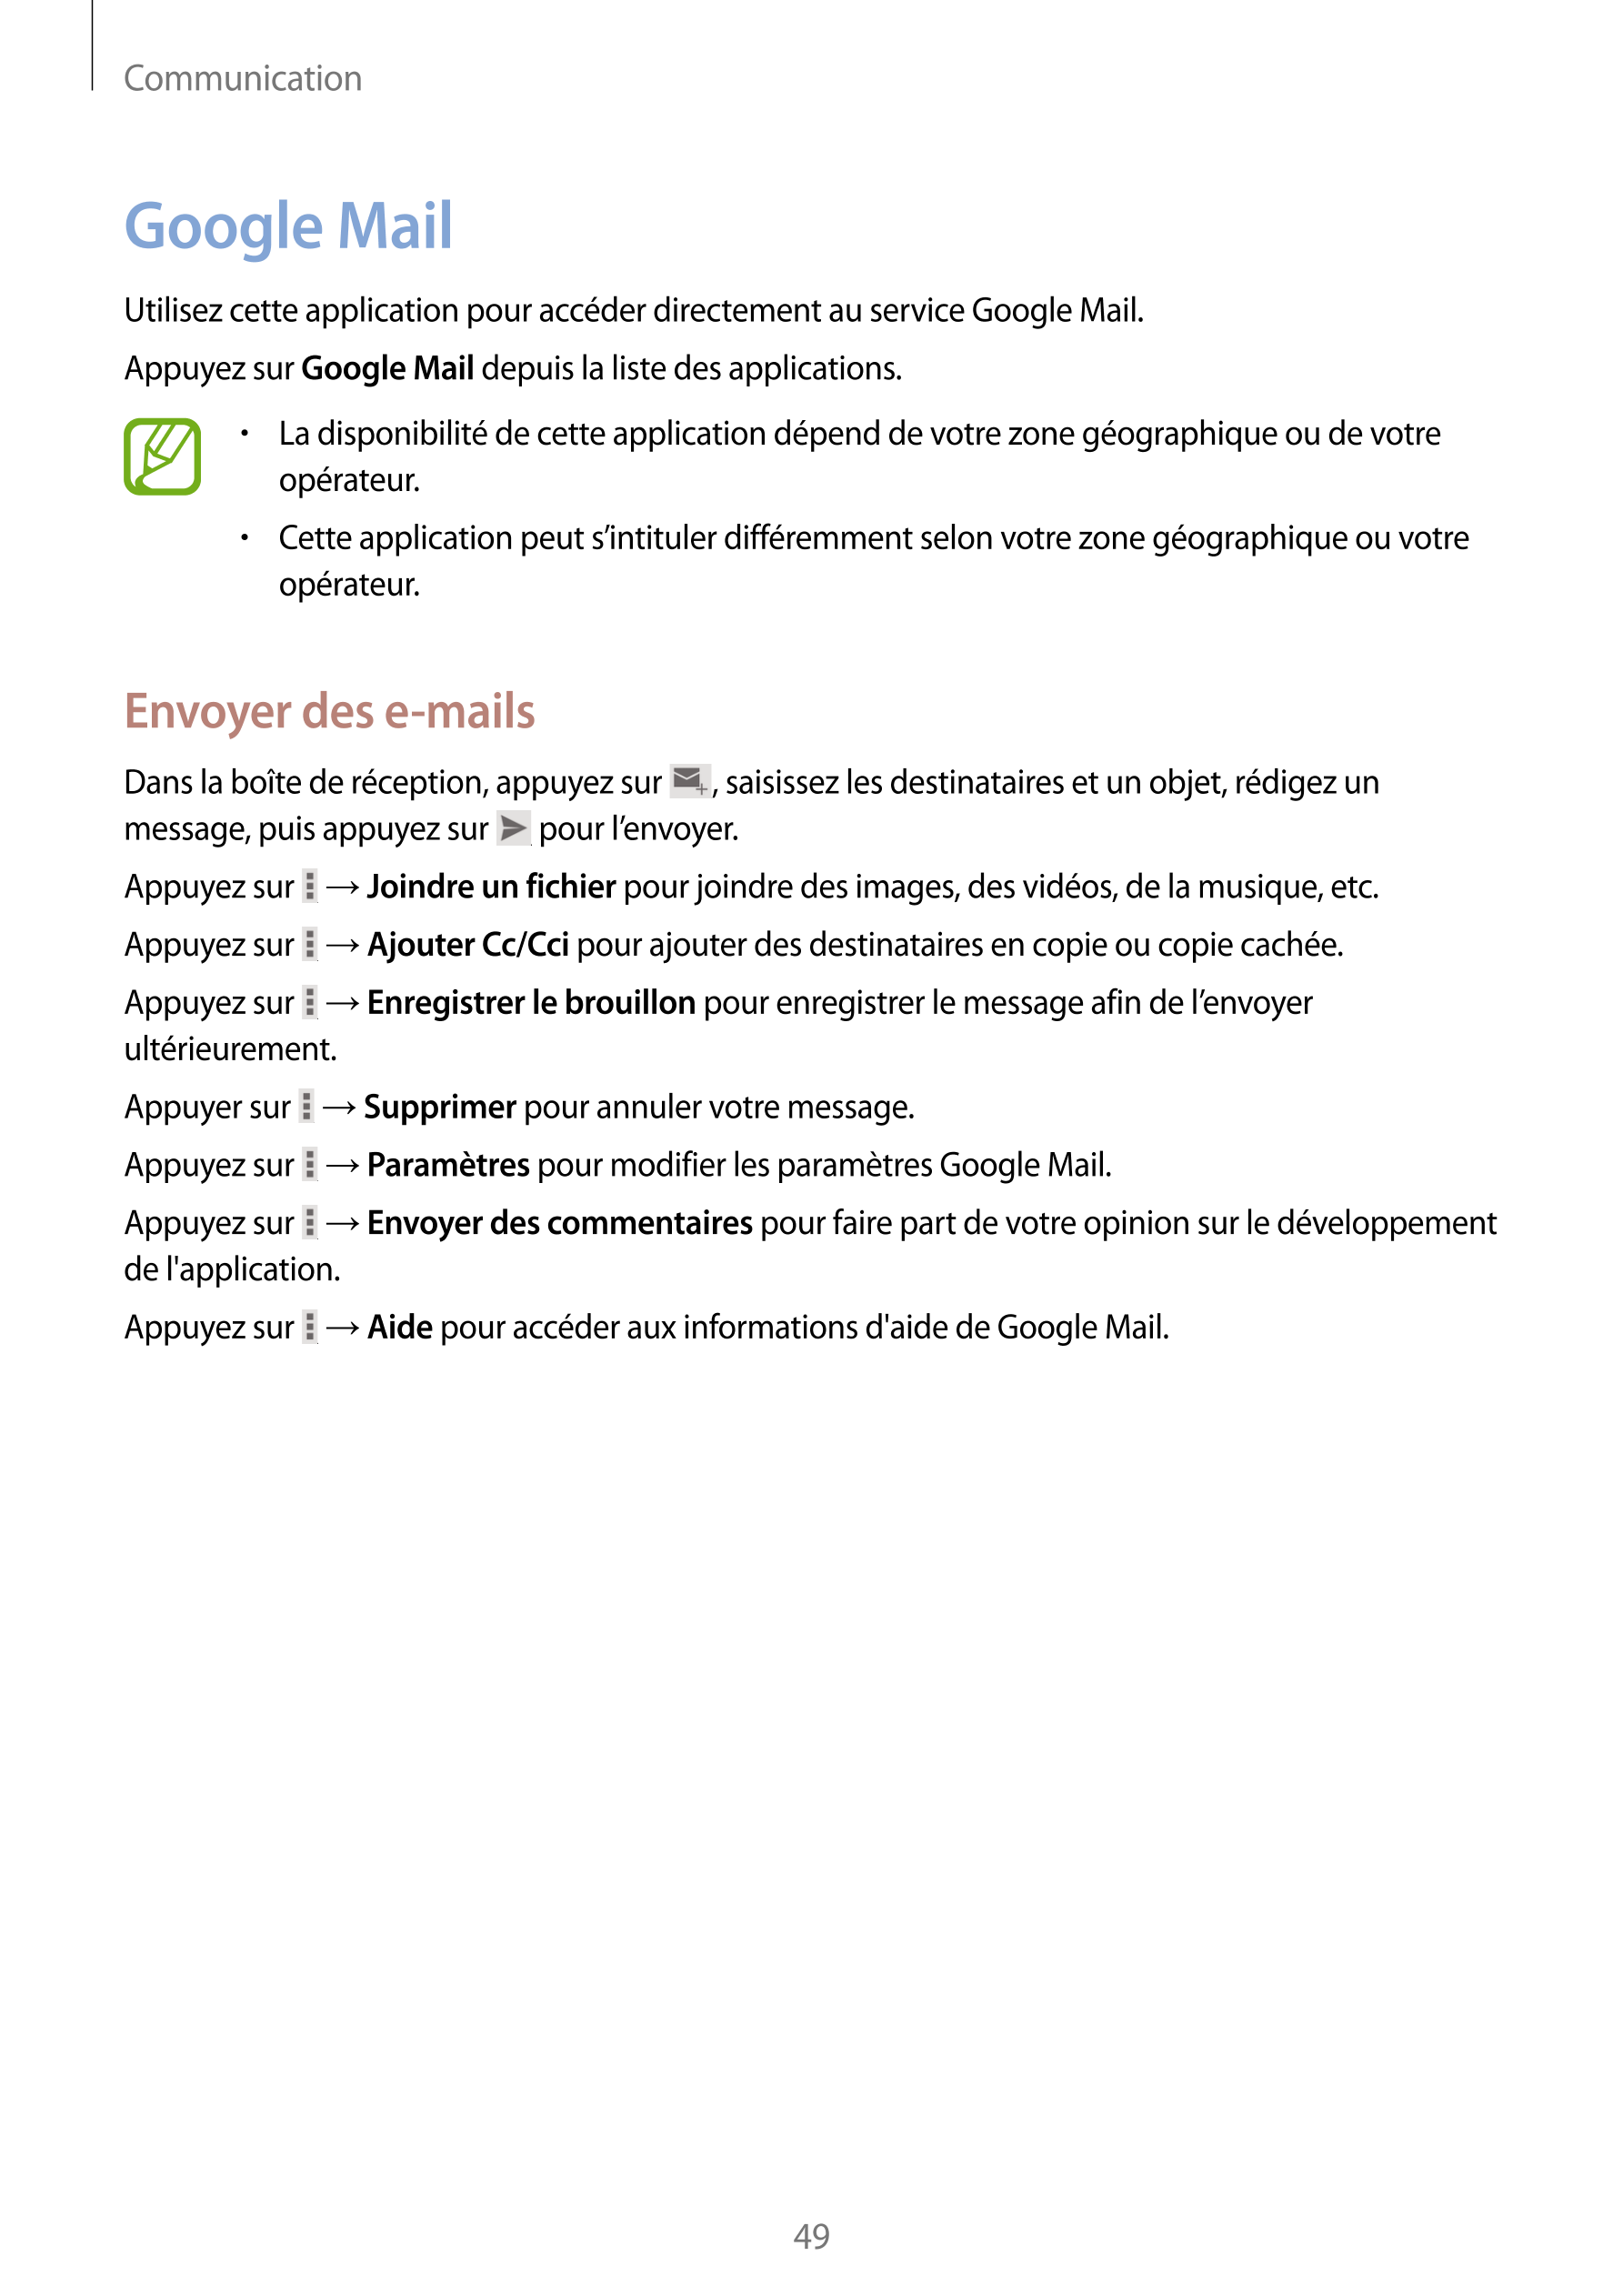 Communication
Google Mail
Utilisez cette application pour accéder directement au service Google Mail.
Appuyez sur  Google Mail d